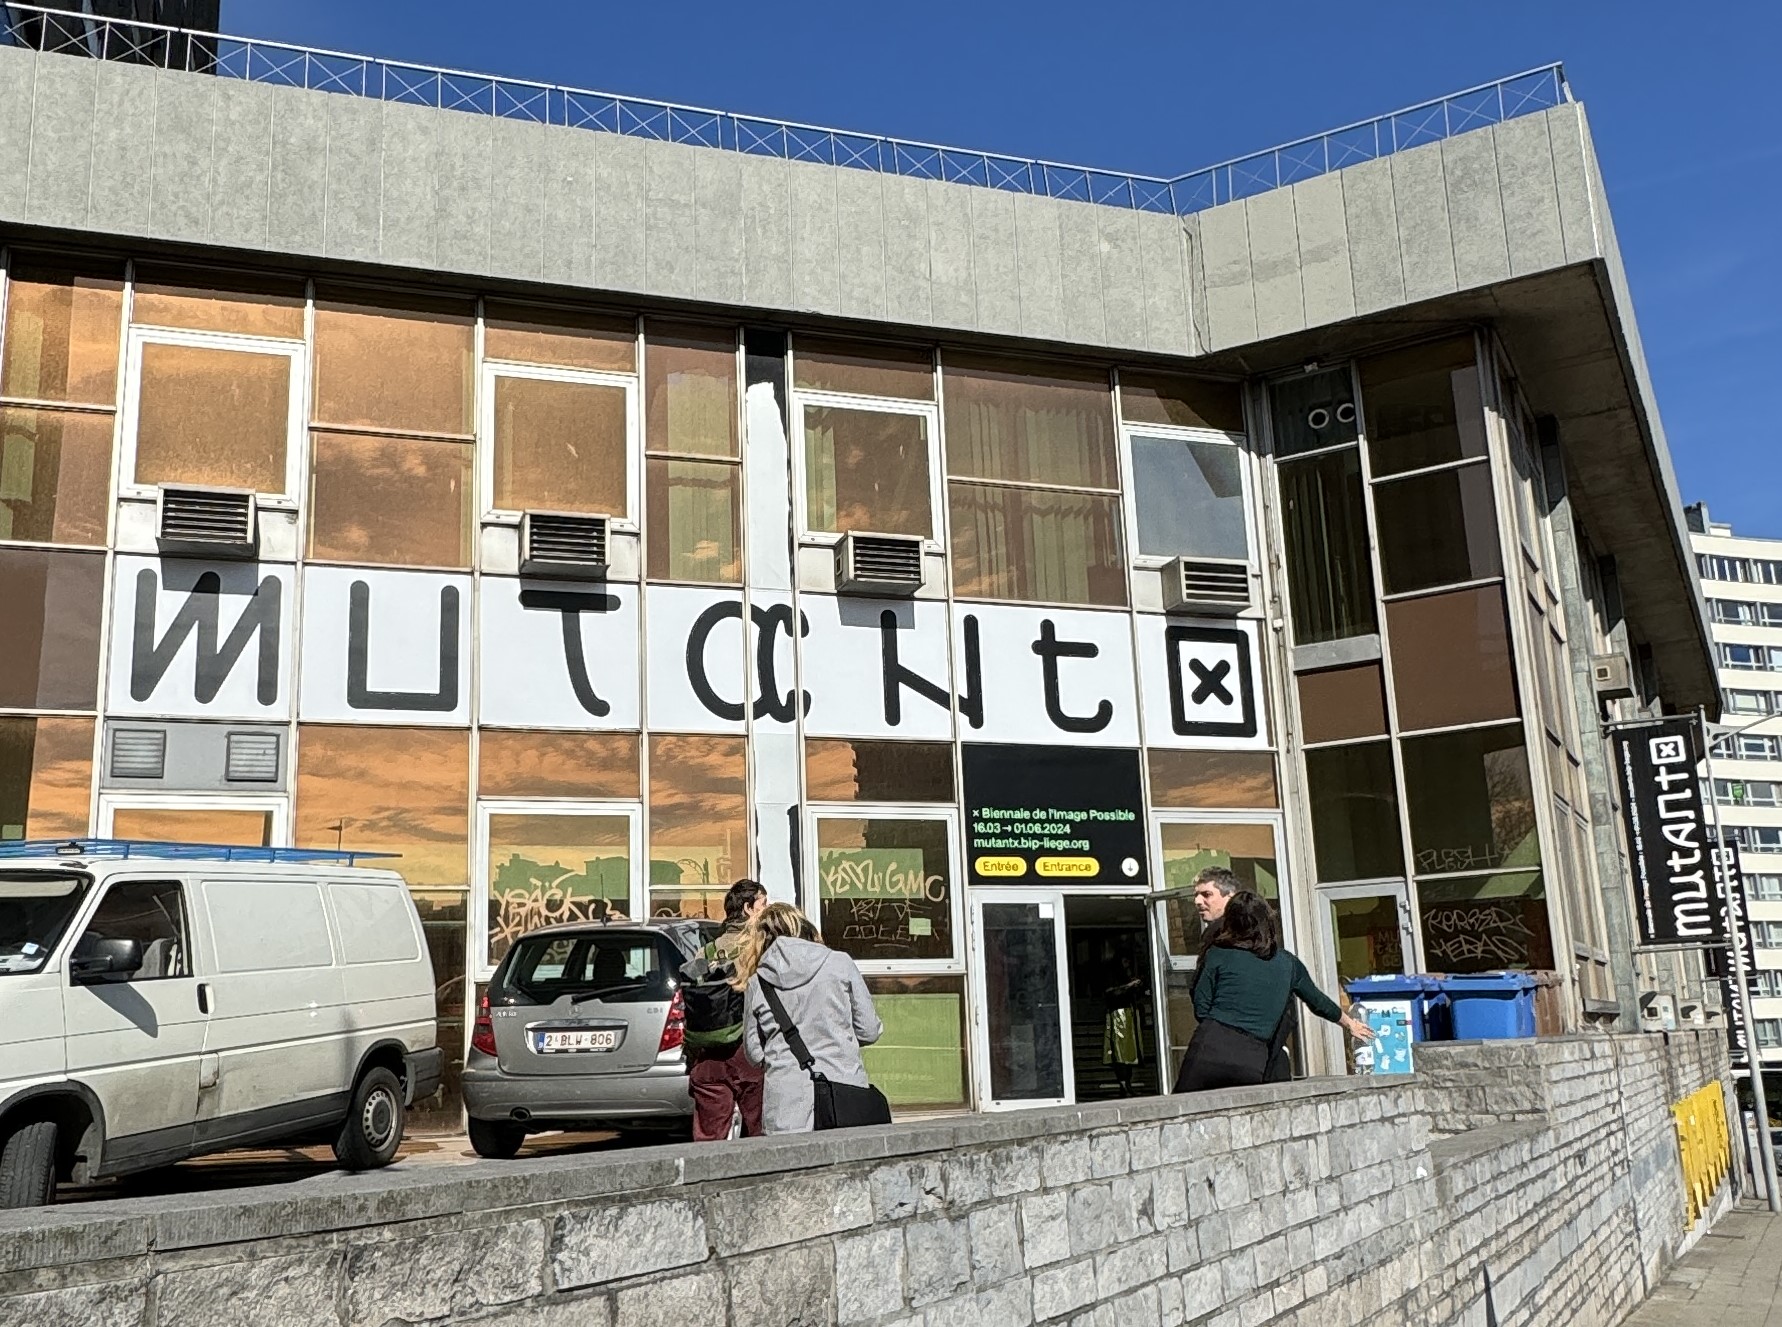 Blick auf den Eingang zum Hauptquartier der Biennale in Lüttich. Auf einem Banner steht Mutantx